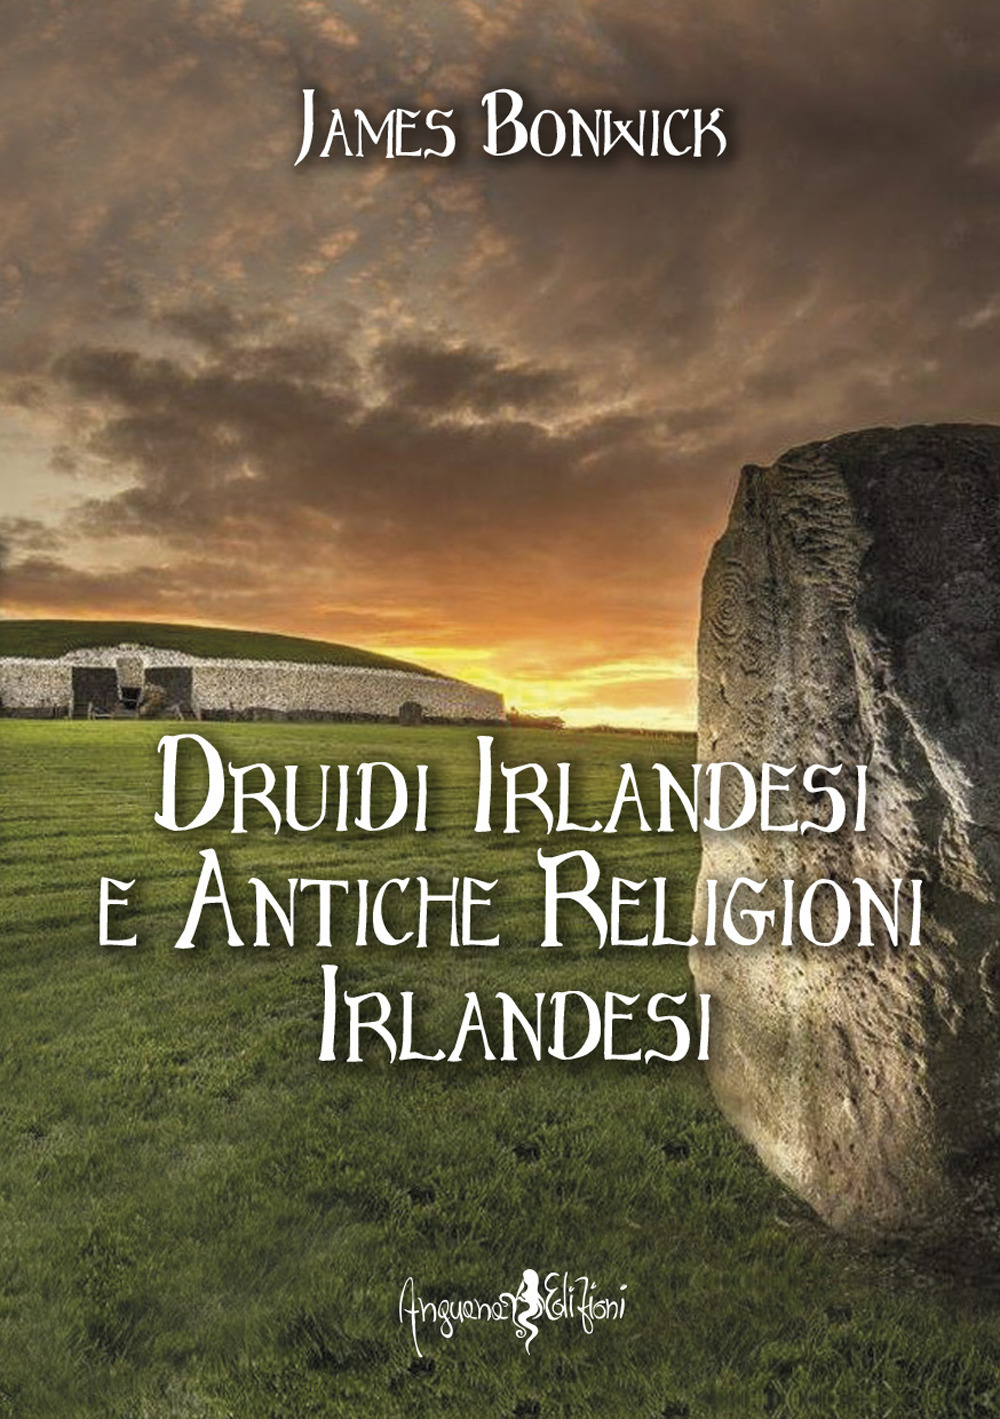 Libri James Bonwick - Druidi Irlandesi E Antiche Religioni Irlandesi NUOVO SIGILLATO, EDIZIONE DEL 01/06/2022 SUBITO DISPONIBILE